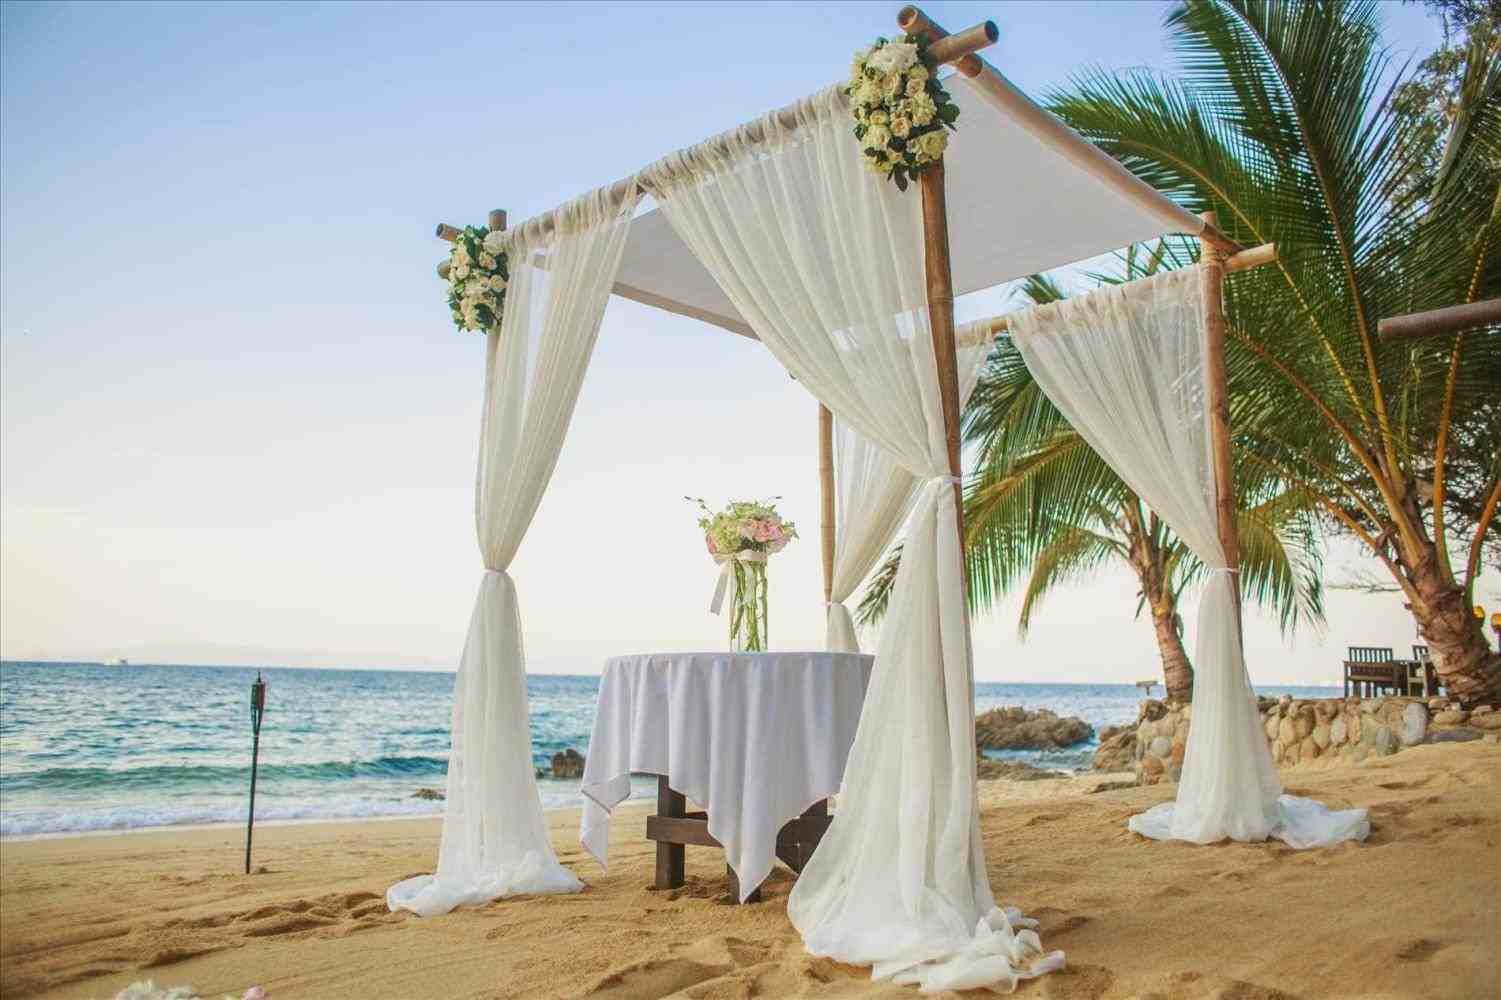 Site Visit - destination wedding